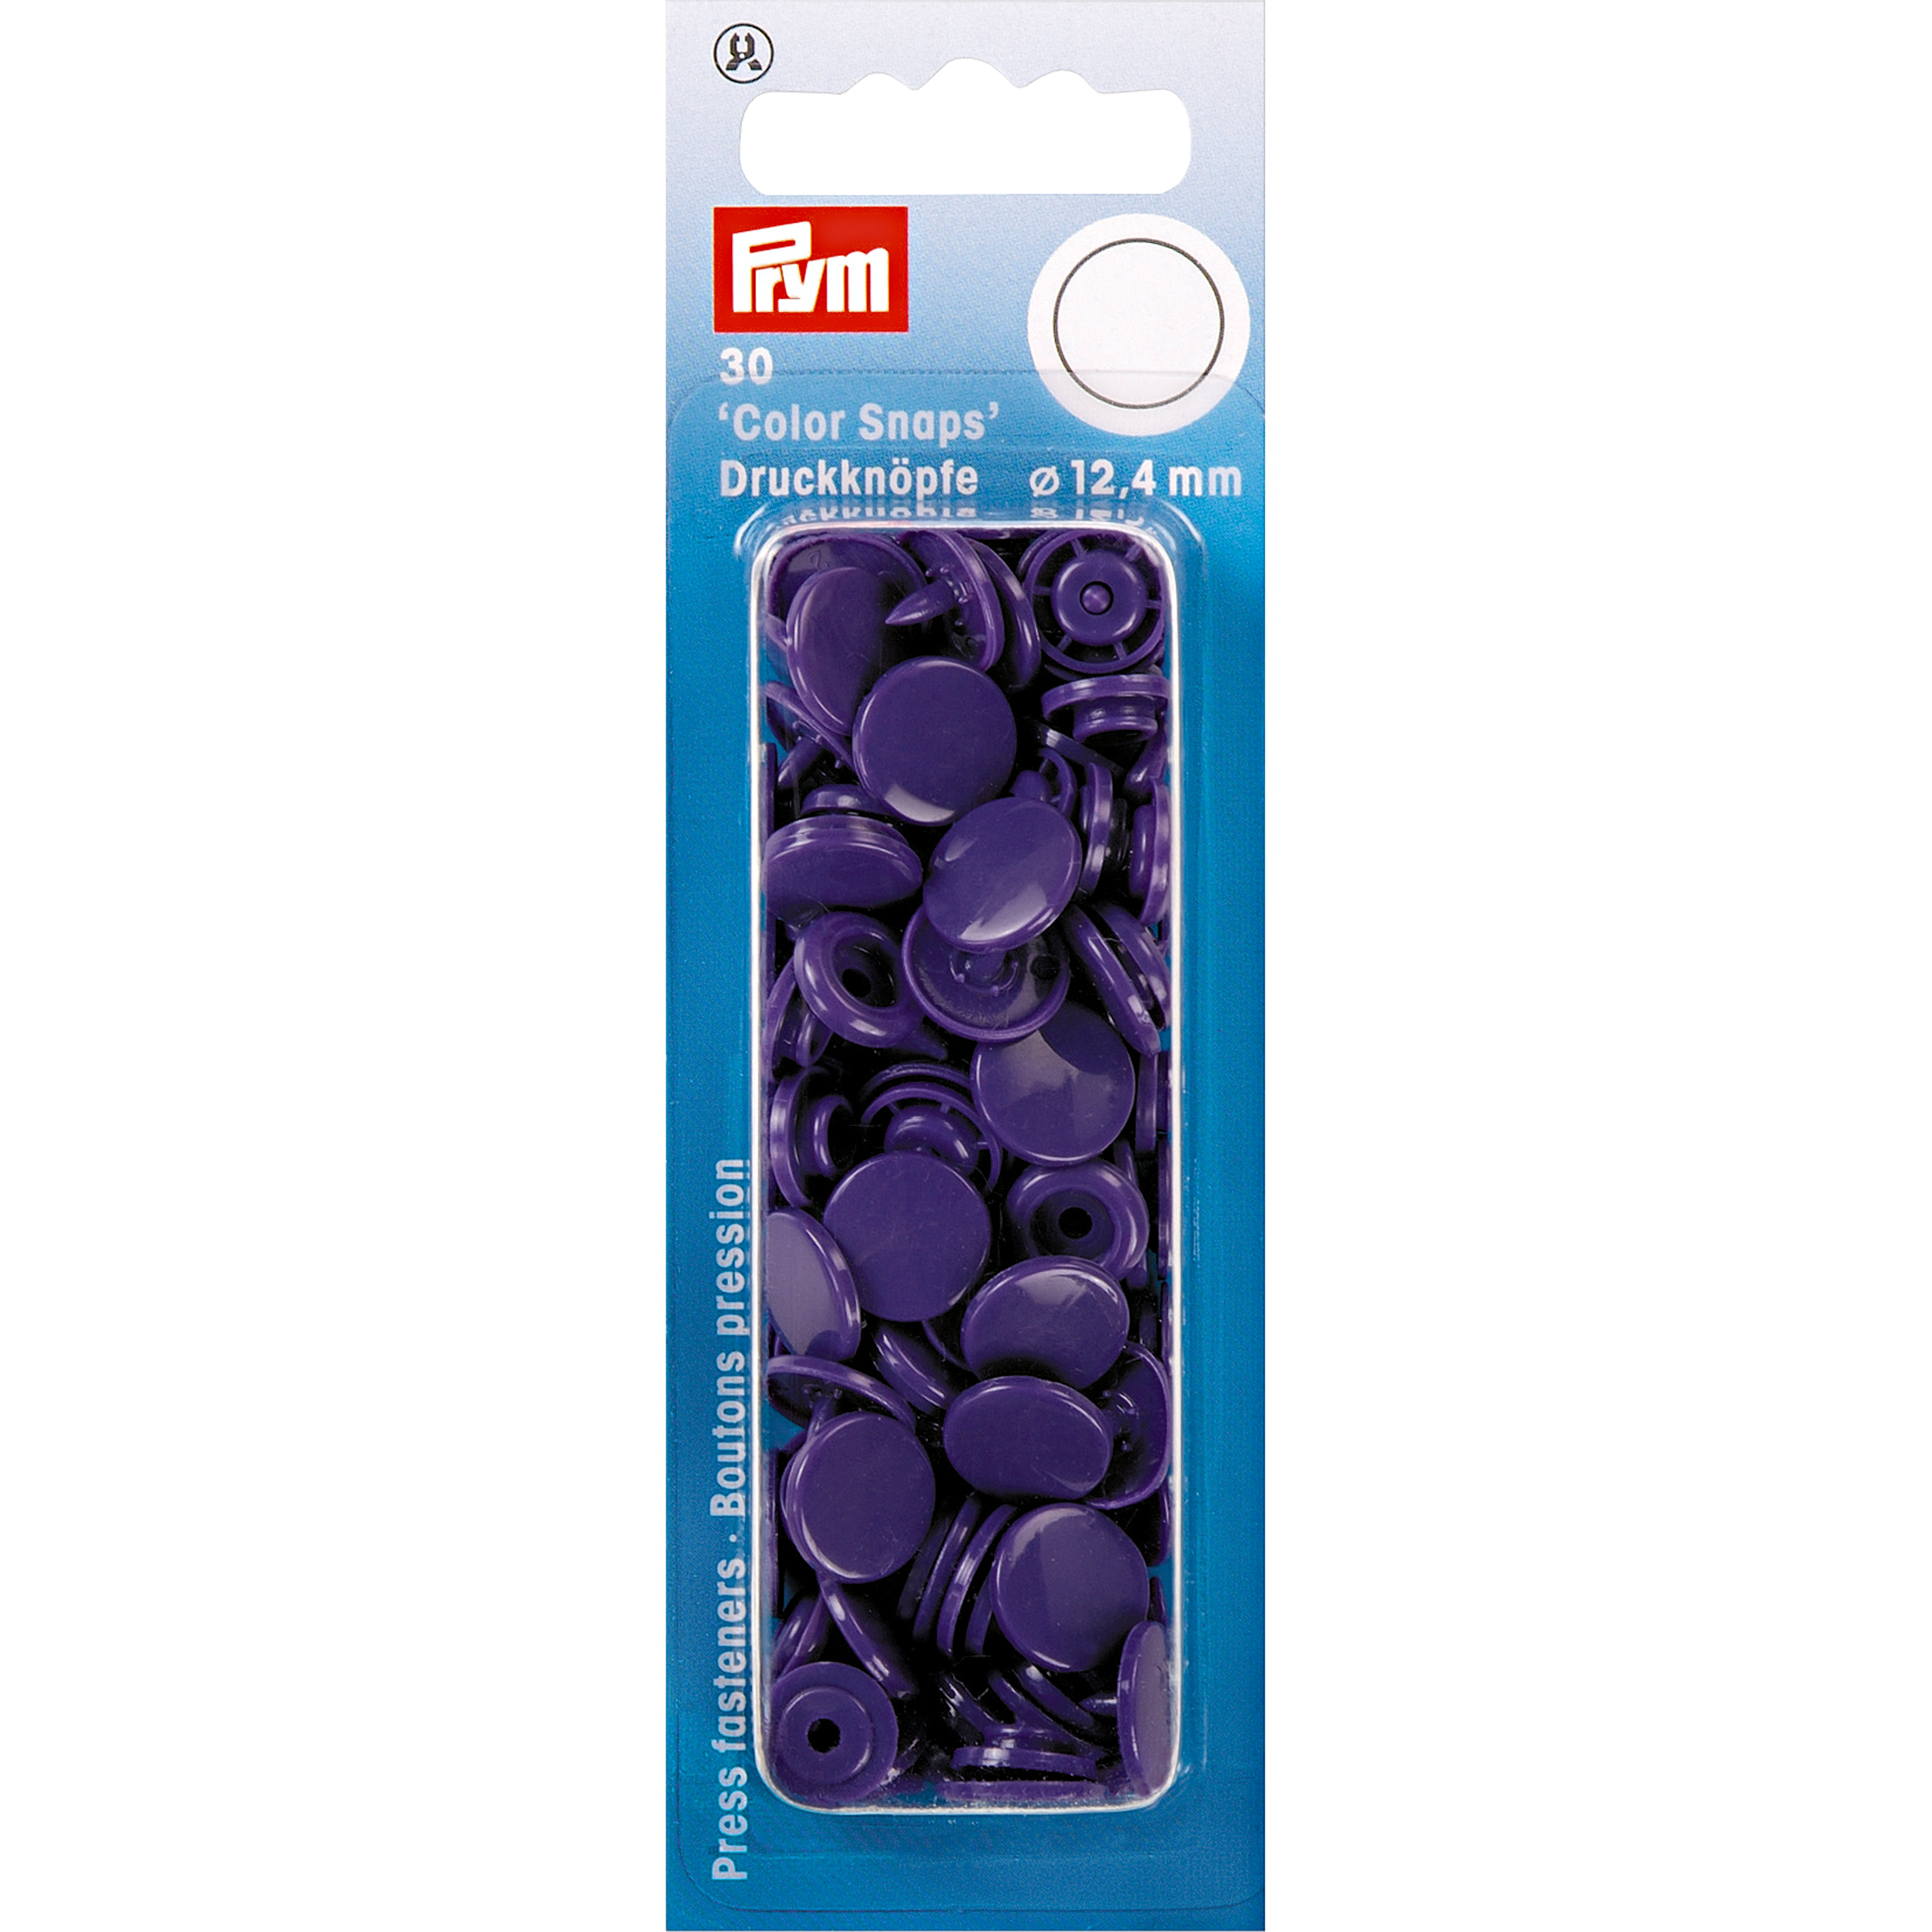 Nähfrei-Druckknöpfe Color Snaps rund 12,4 mm 30 St von Prym violett